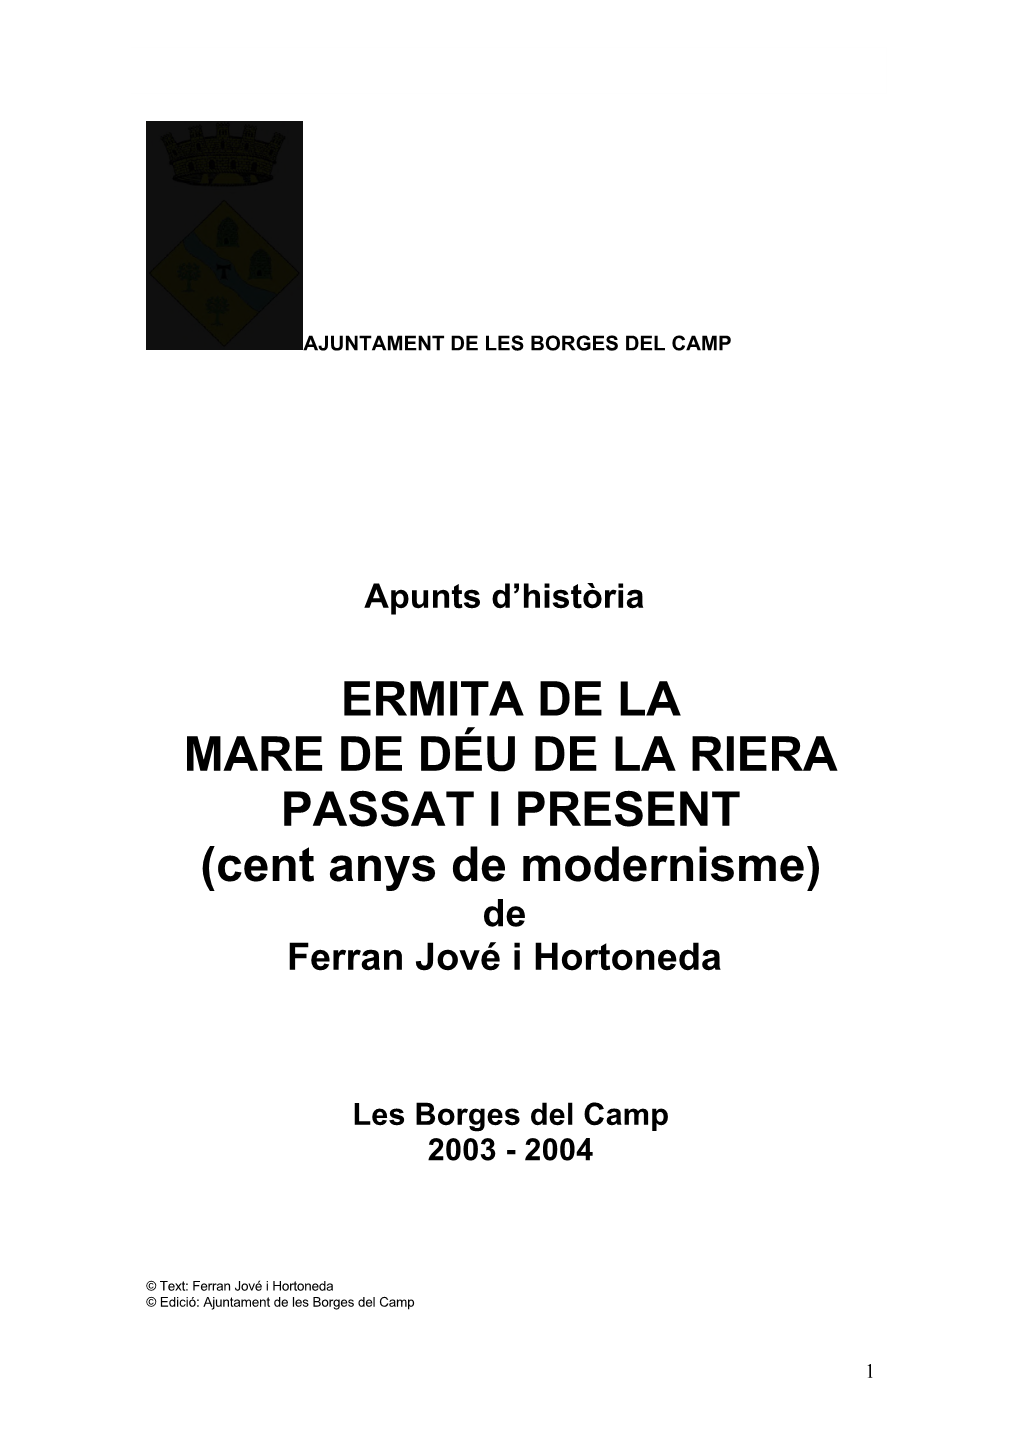 ERMITA DE LA MARE DE DÉU DE LA RIERA PASSAT I PRESENT (Cent Anys De Modernisme) De Ferran Jové I Hortoneda